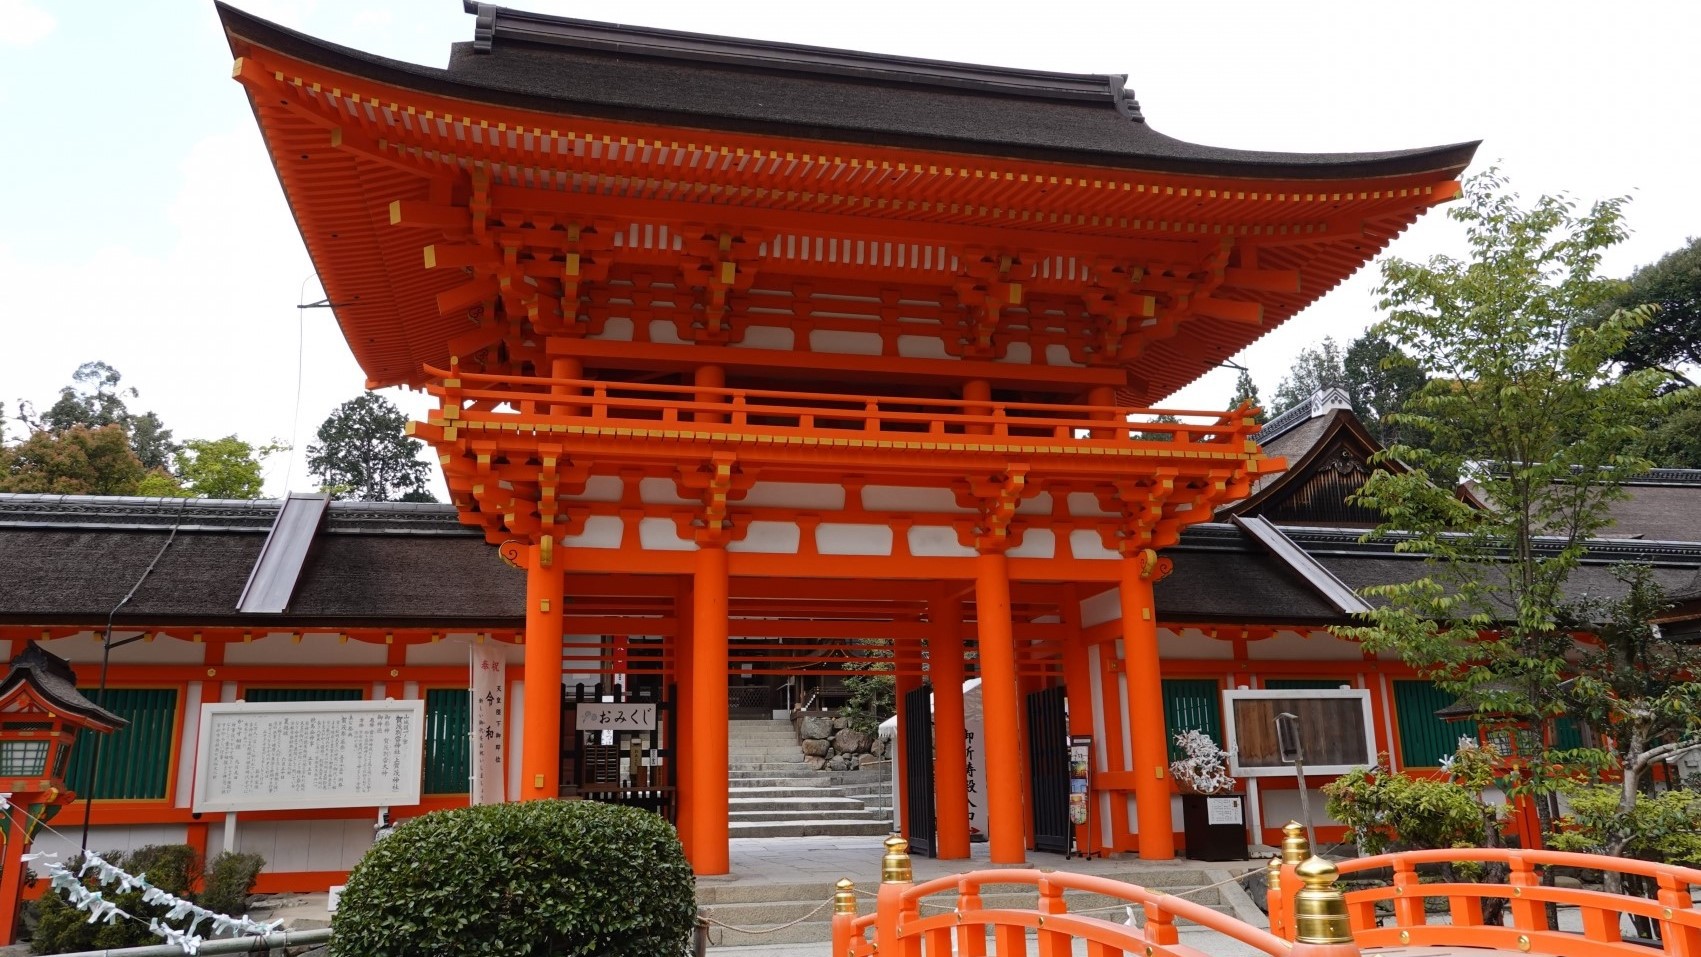 上賀茂神社京都で最も古い神社のひとつといわれている世界遺産にも登録された神社。